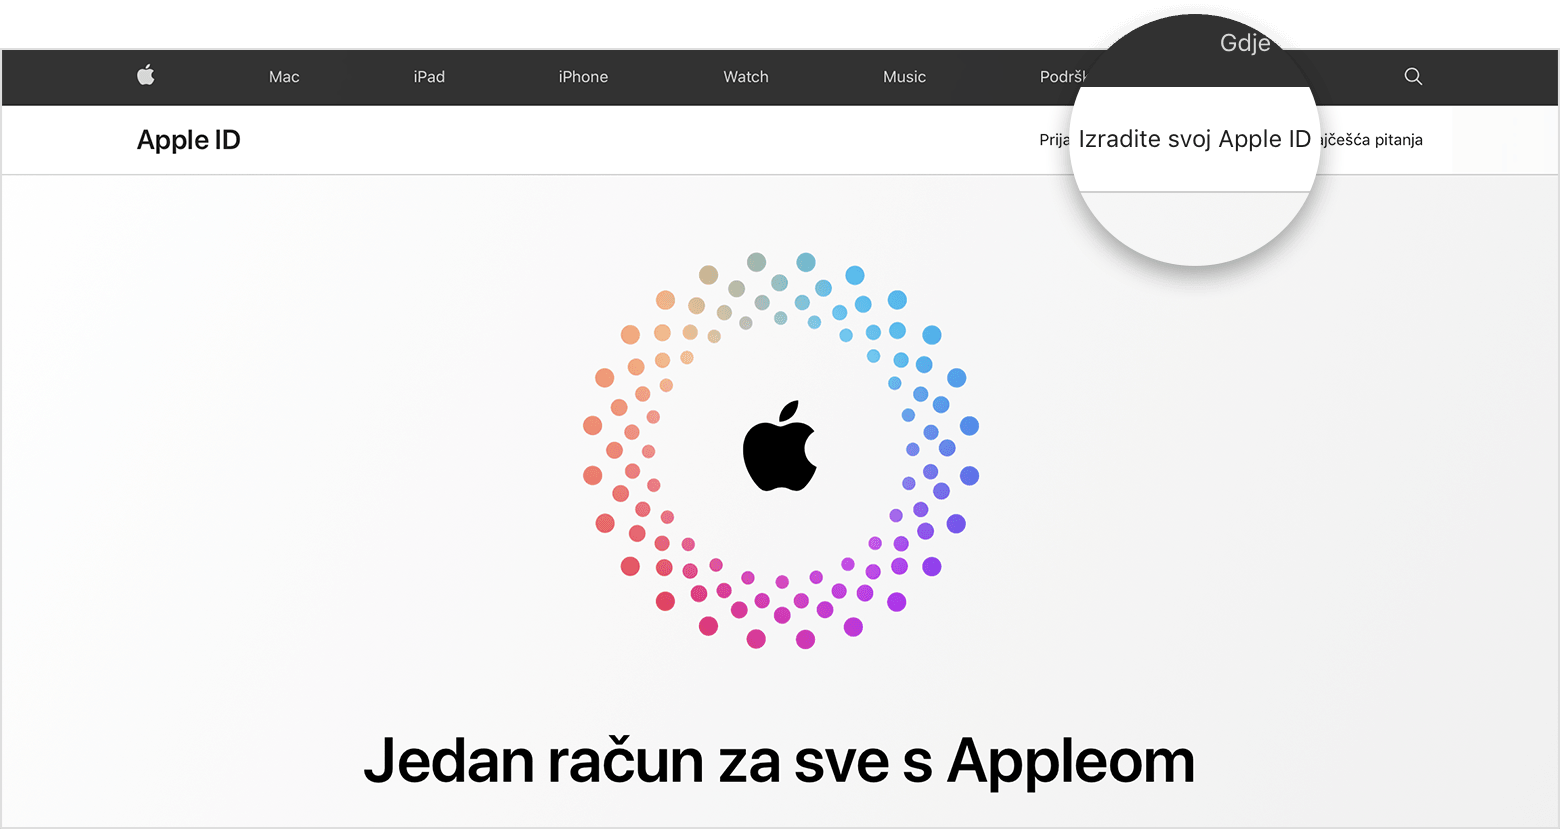 Snimka stranice appleid.apple.com, na kojoj se u sredini zaslona nalazi Appleov logotip okružen koncentričnim krugovima u boji.